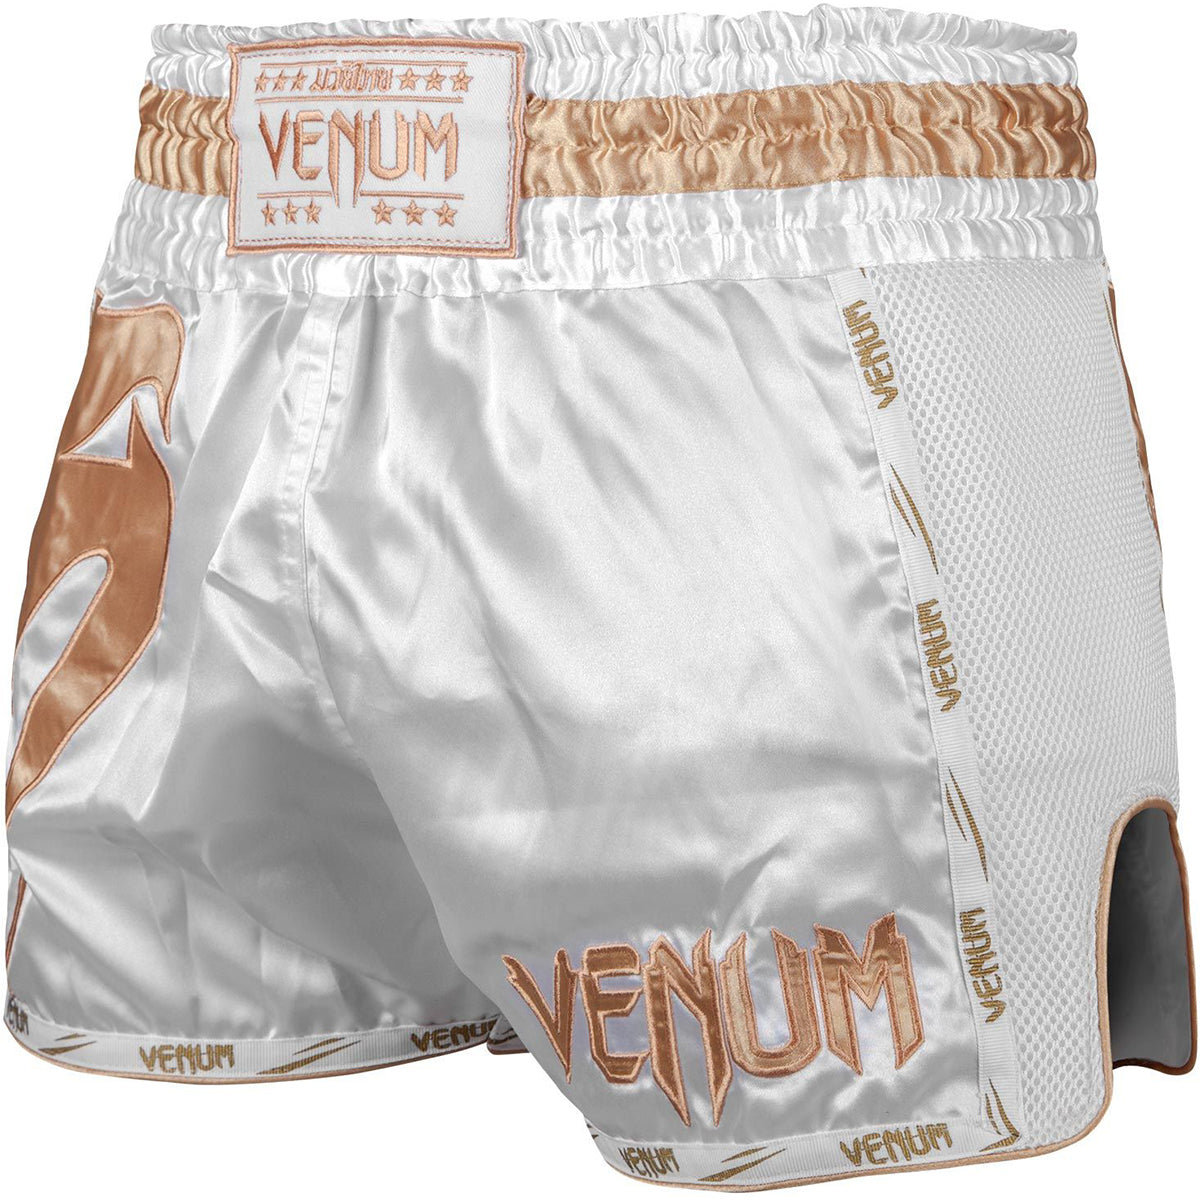 Venum Giant Muay Thai Shorts - White/Gold Venum